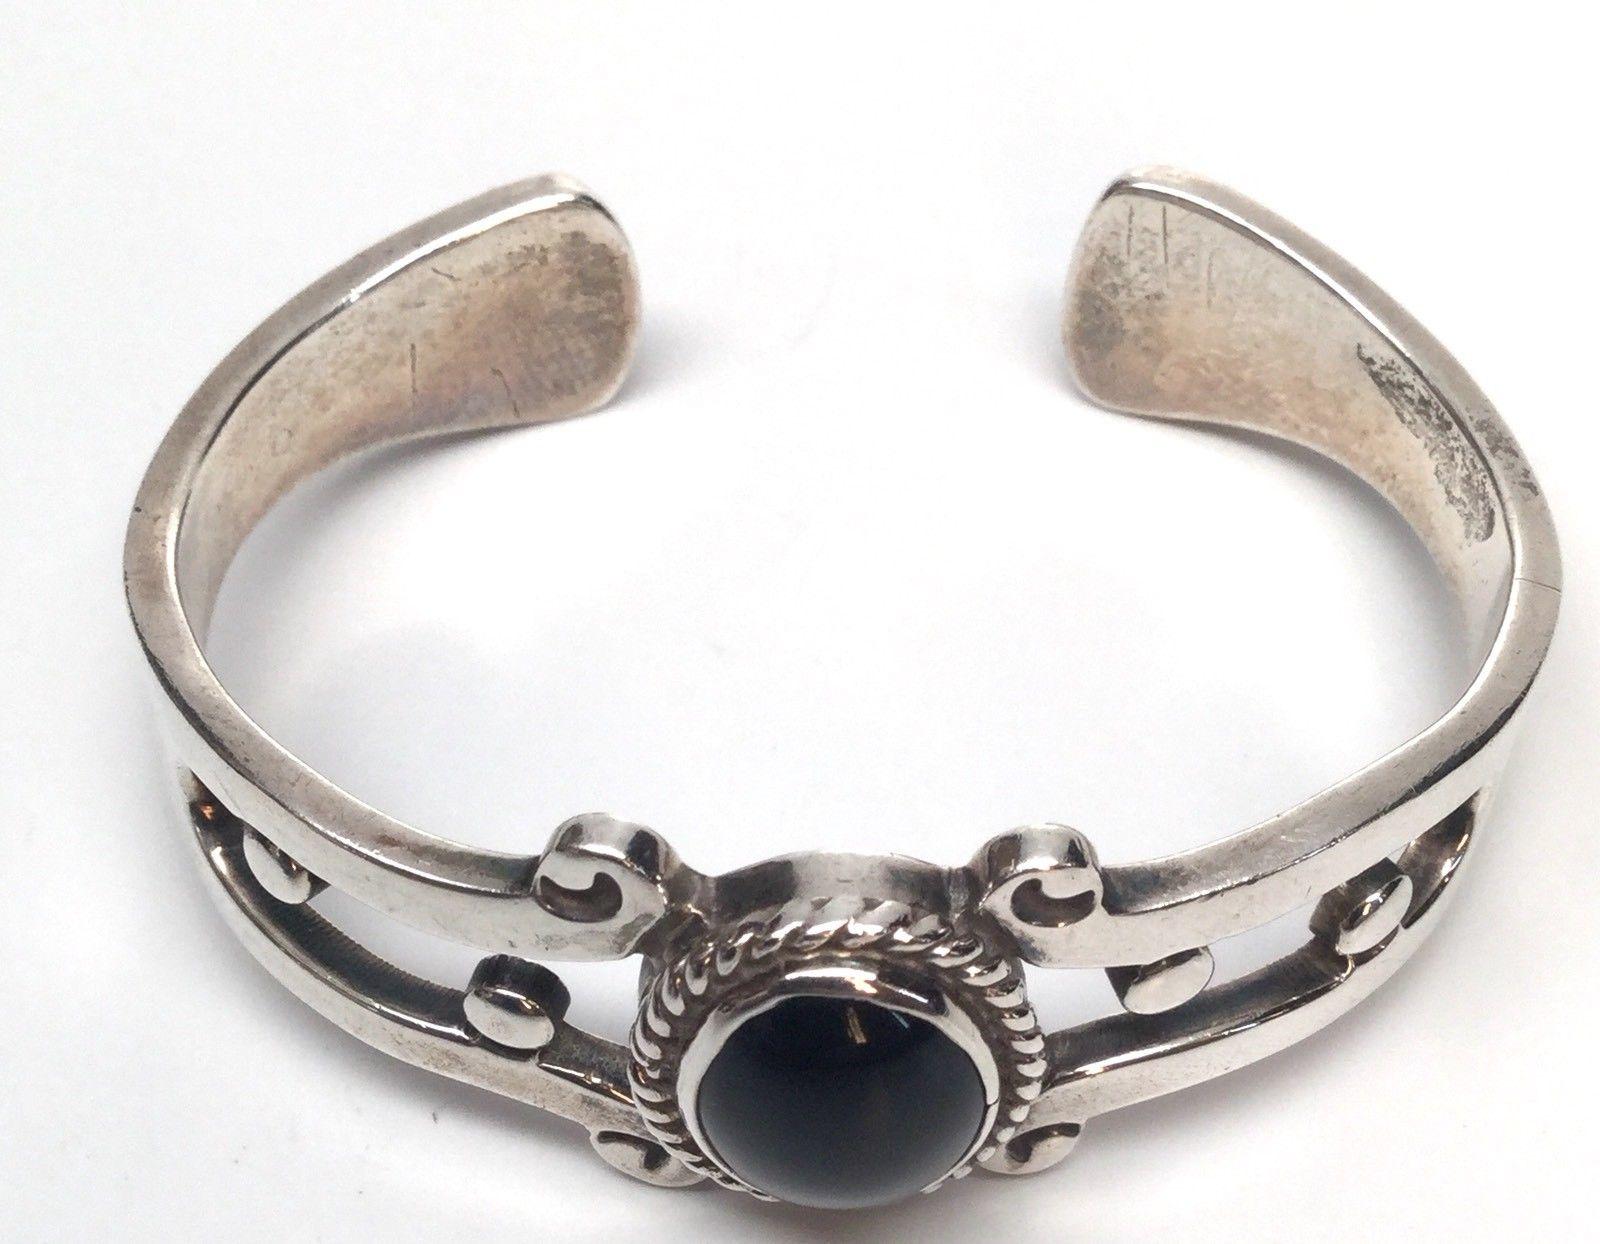 Taxco FDH Manschettenarmband aus Sterlingsilber mit schwarzem Onyx
Dies ist eine schöne Sterling Silber schwarz Onyx Manschette Armband von FDH.

Messung:  Ca. 6 Zoll.  Der Stein misst ca. 12 mm x 9 mm.  Ca. 12 mm hoch.

Gewicht:  38,6 g / 24,8